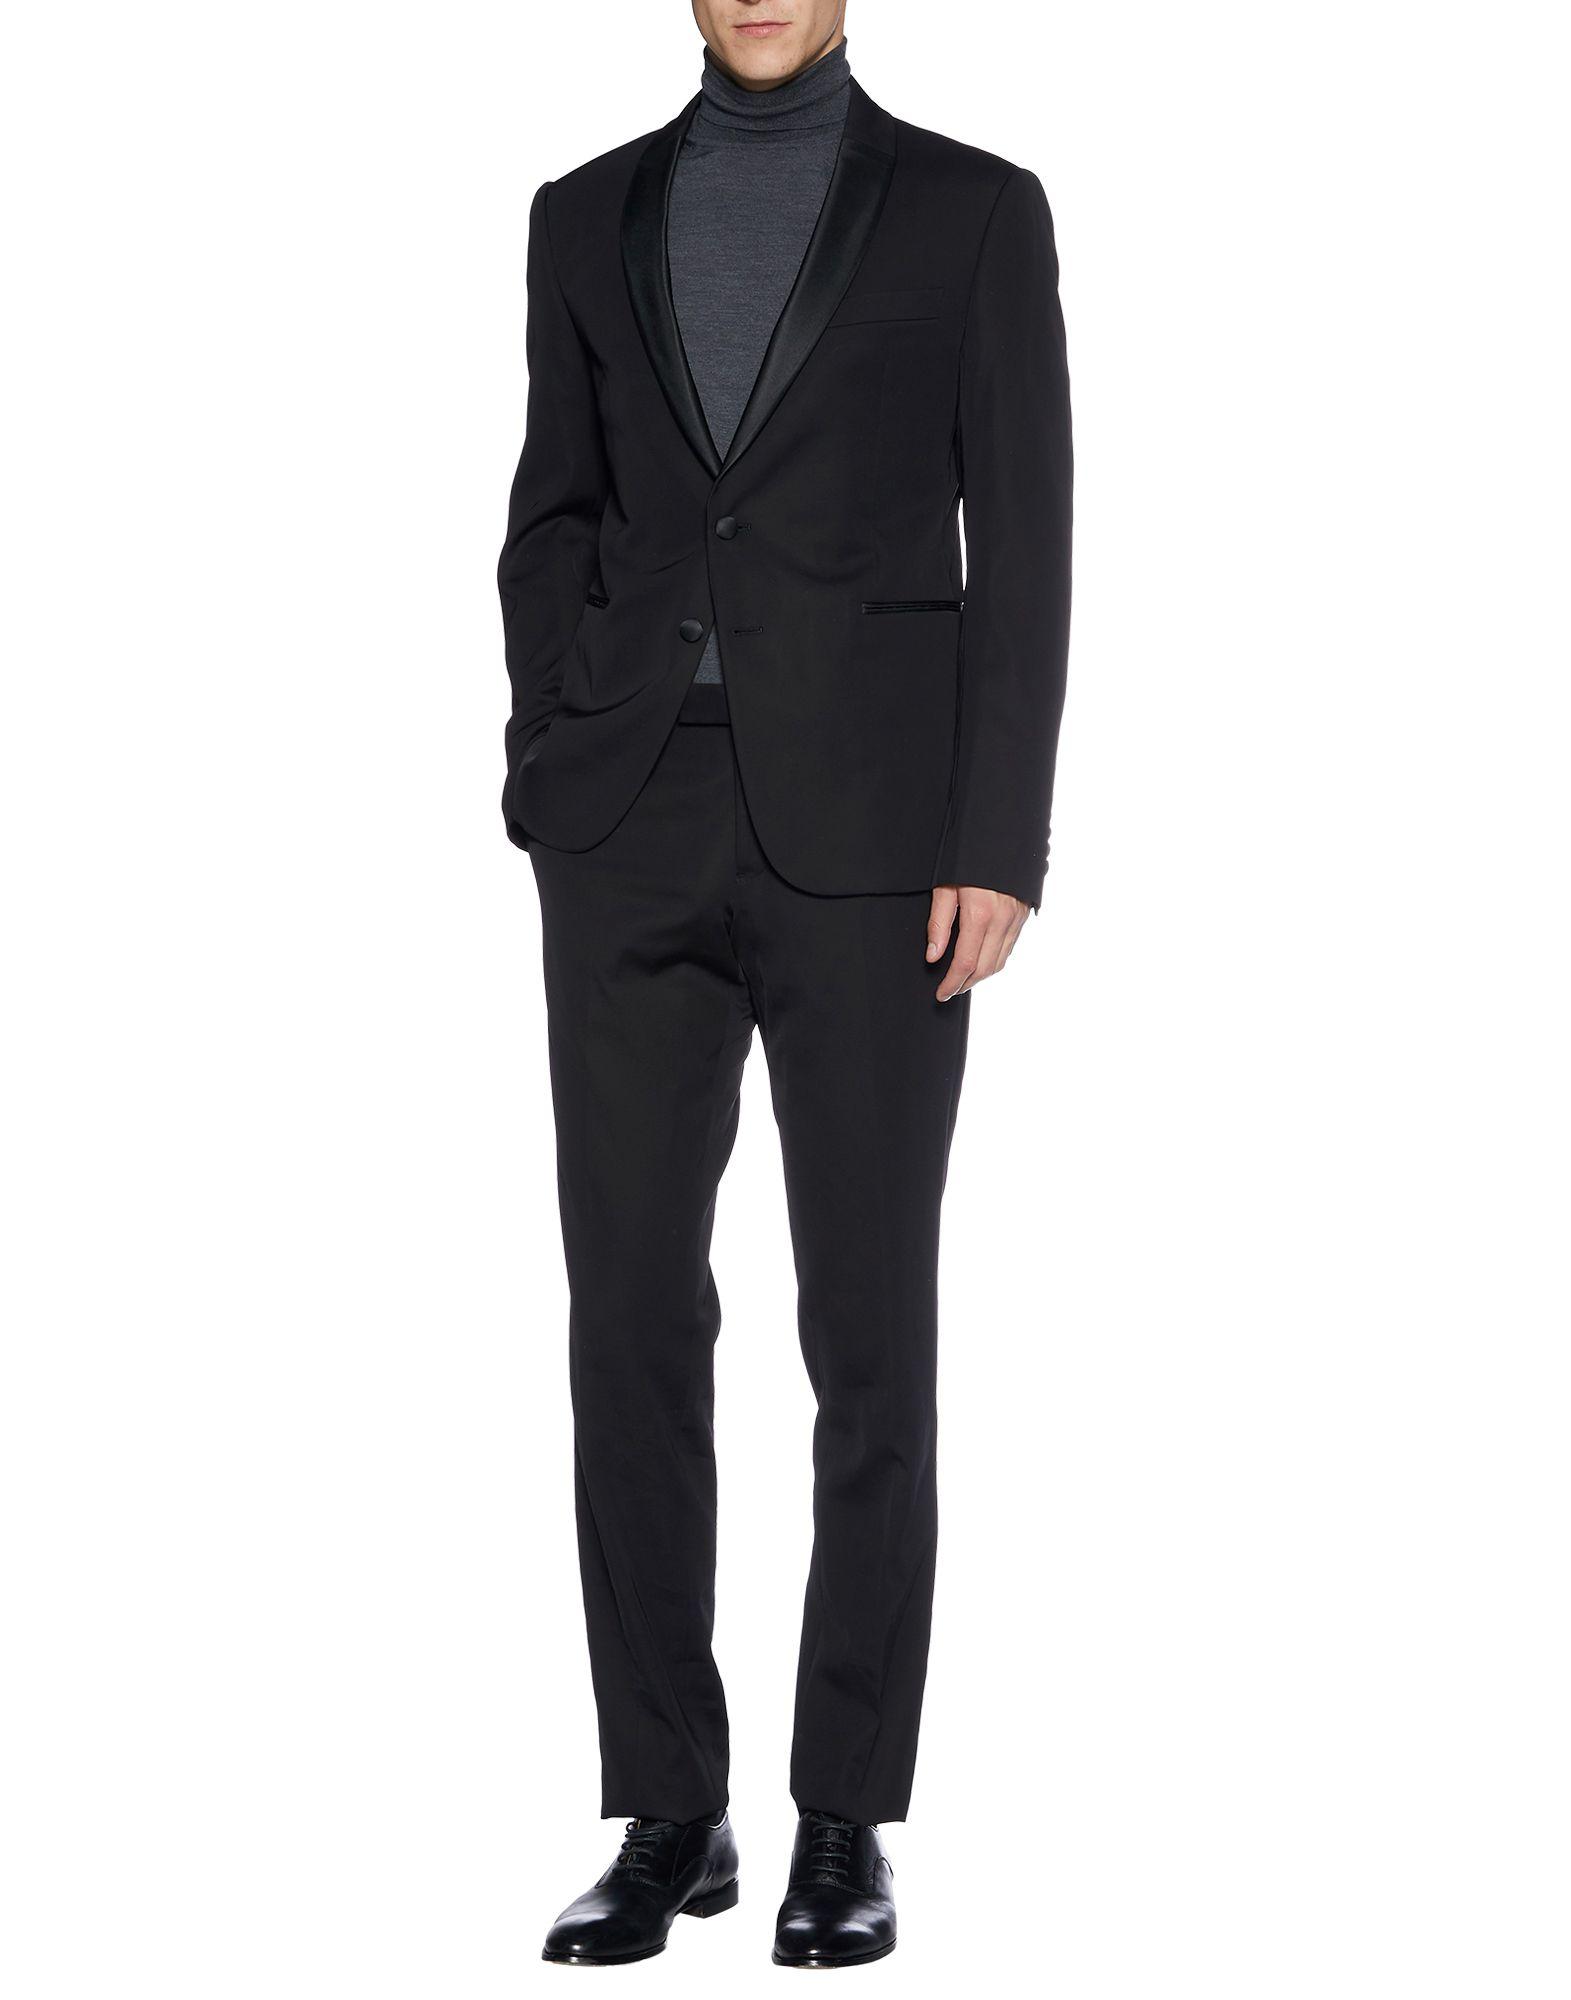 Emporio Armani Satin Suit in Black for Men - Lyst